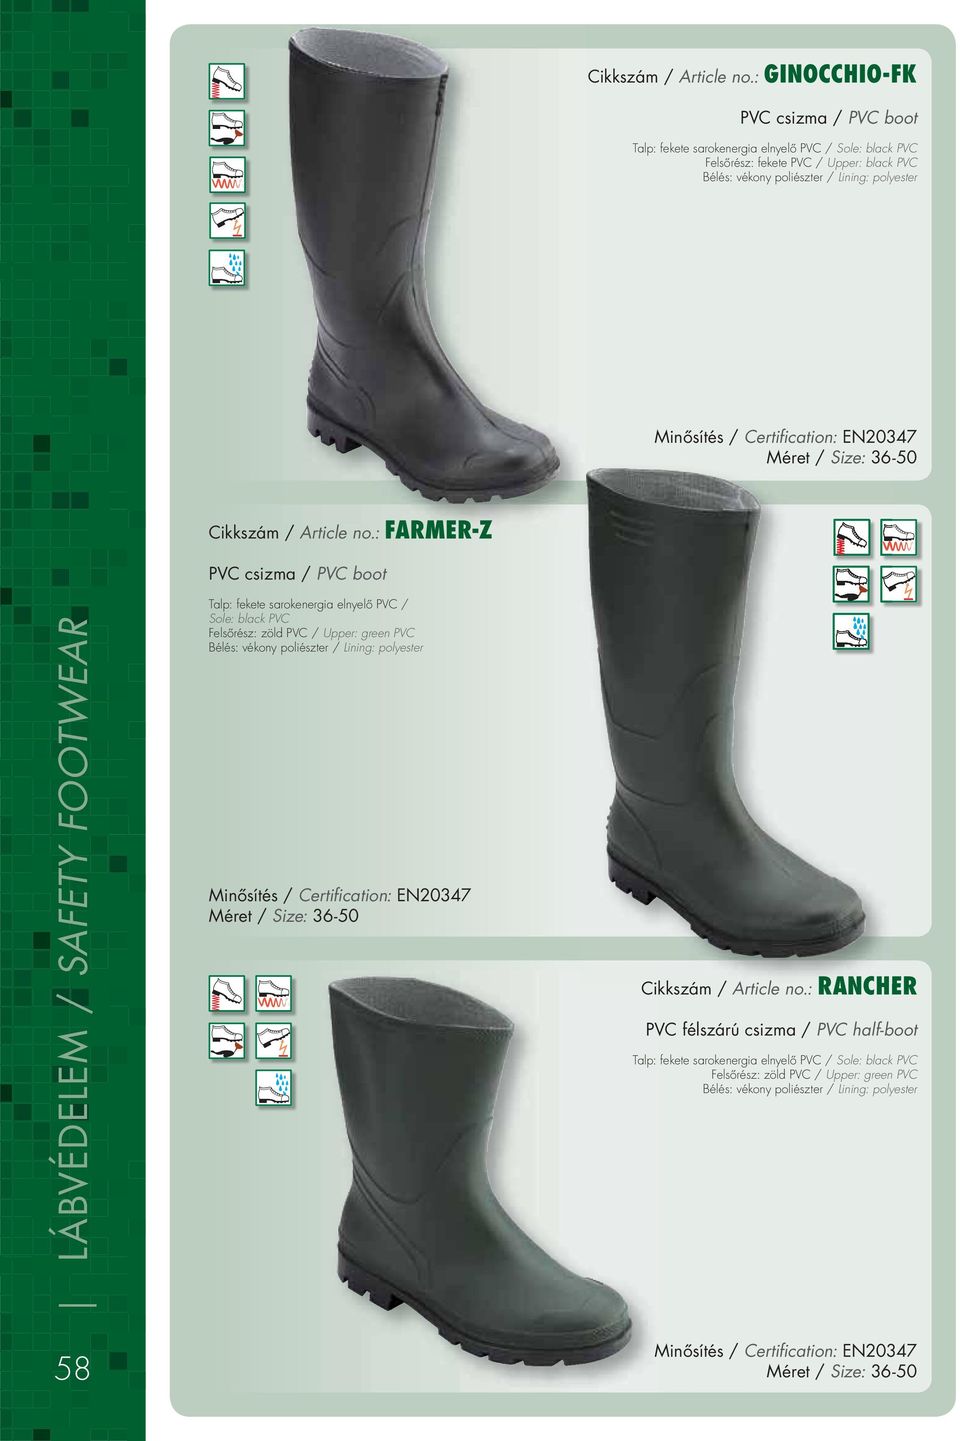 Lining: polyester Méret / Size: 36-50 : FARMER-Z PVC csizma / PVC boot Talp: fekete sarokenergia elnyelô PVC / Sole: black PVC Felsôrész: zöld PVC / Upper: green PVC